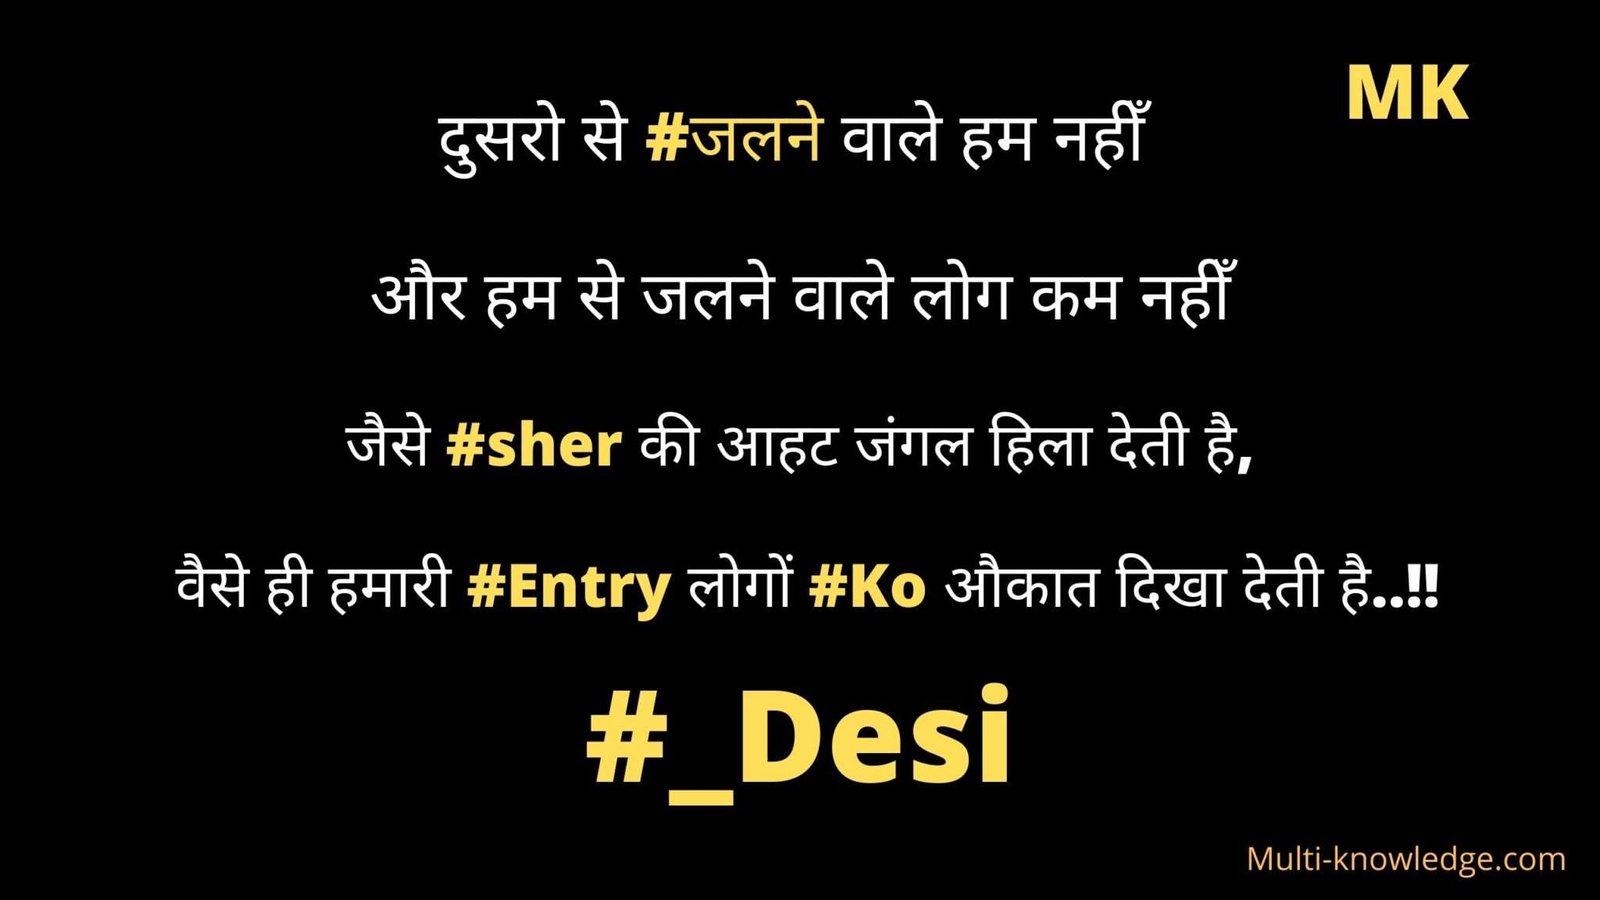 Desi Attitude status in Hindi by multi-knowledge.com